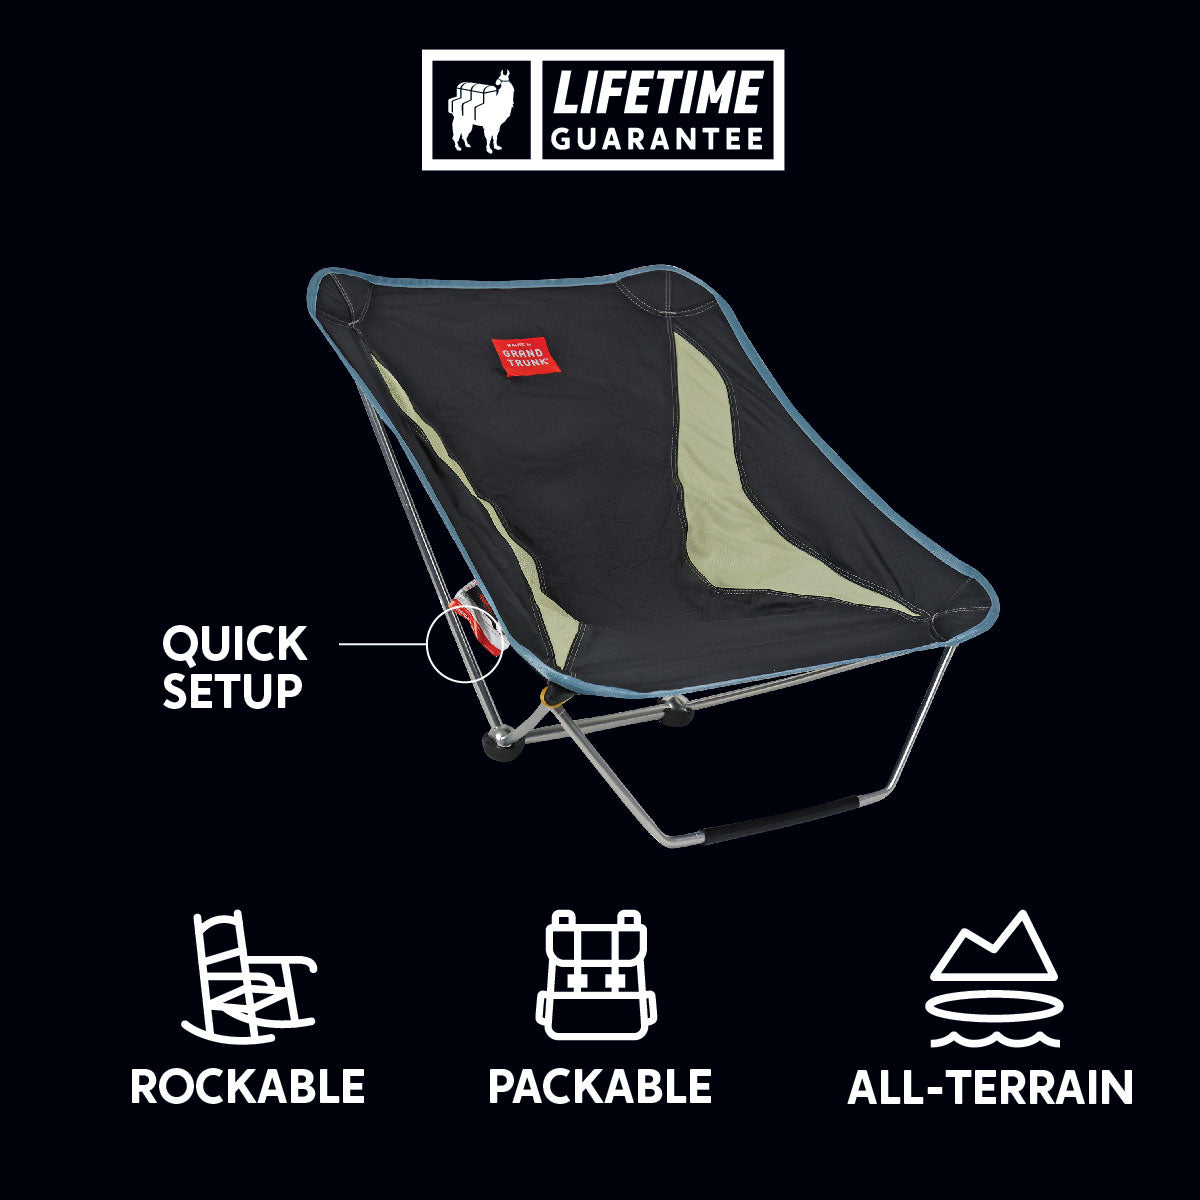 Mayfly chair rockable lightweight packable all-terrain quick setup